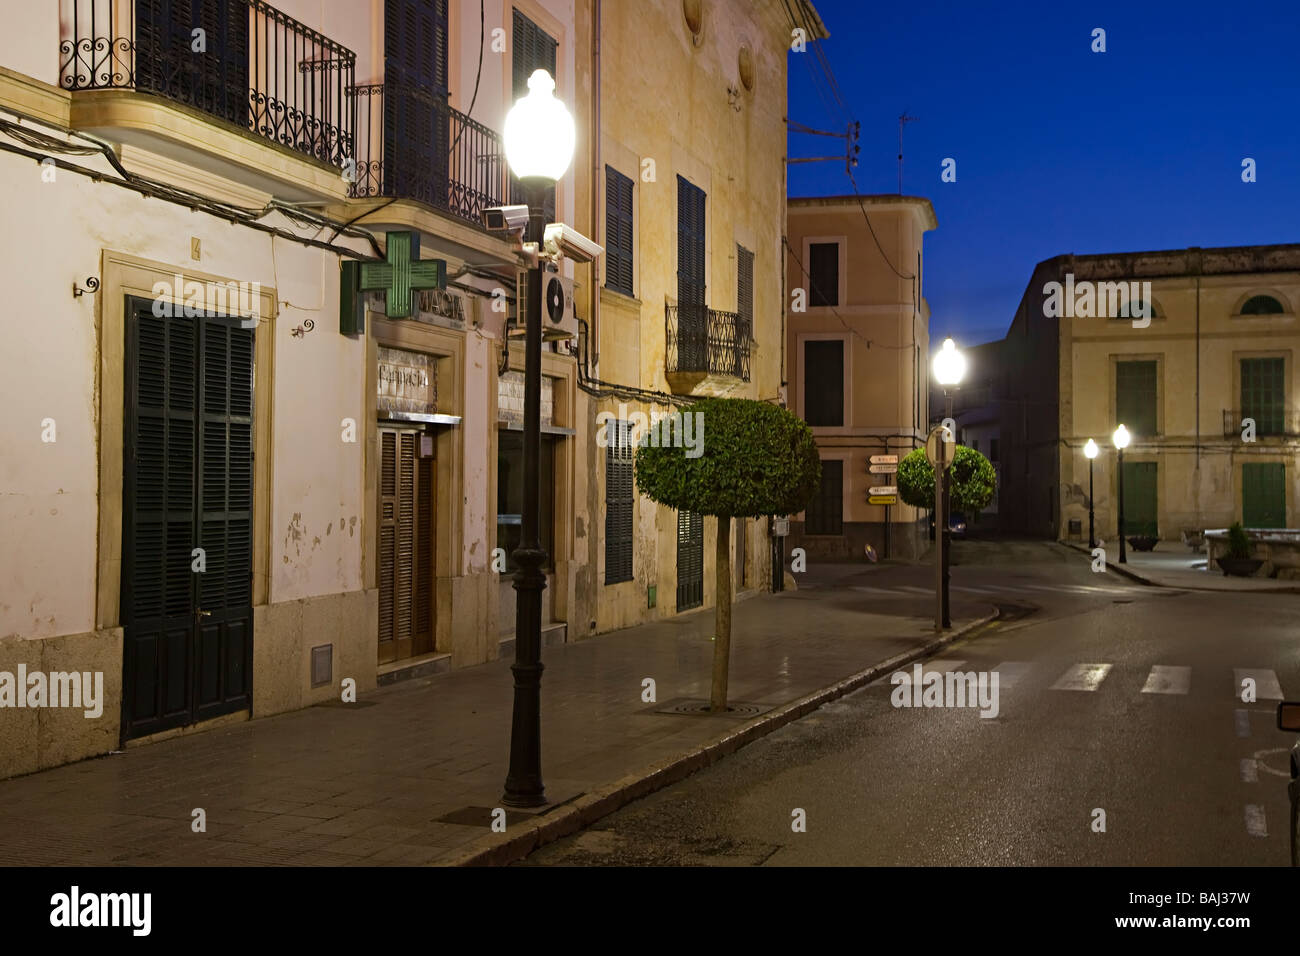 La rue vide au crépuscule avec des caméras de sécurité sur un lampadaire Felanitx, Majorque Espagne Banque D'Images